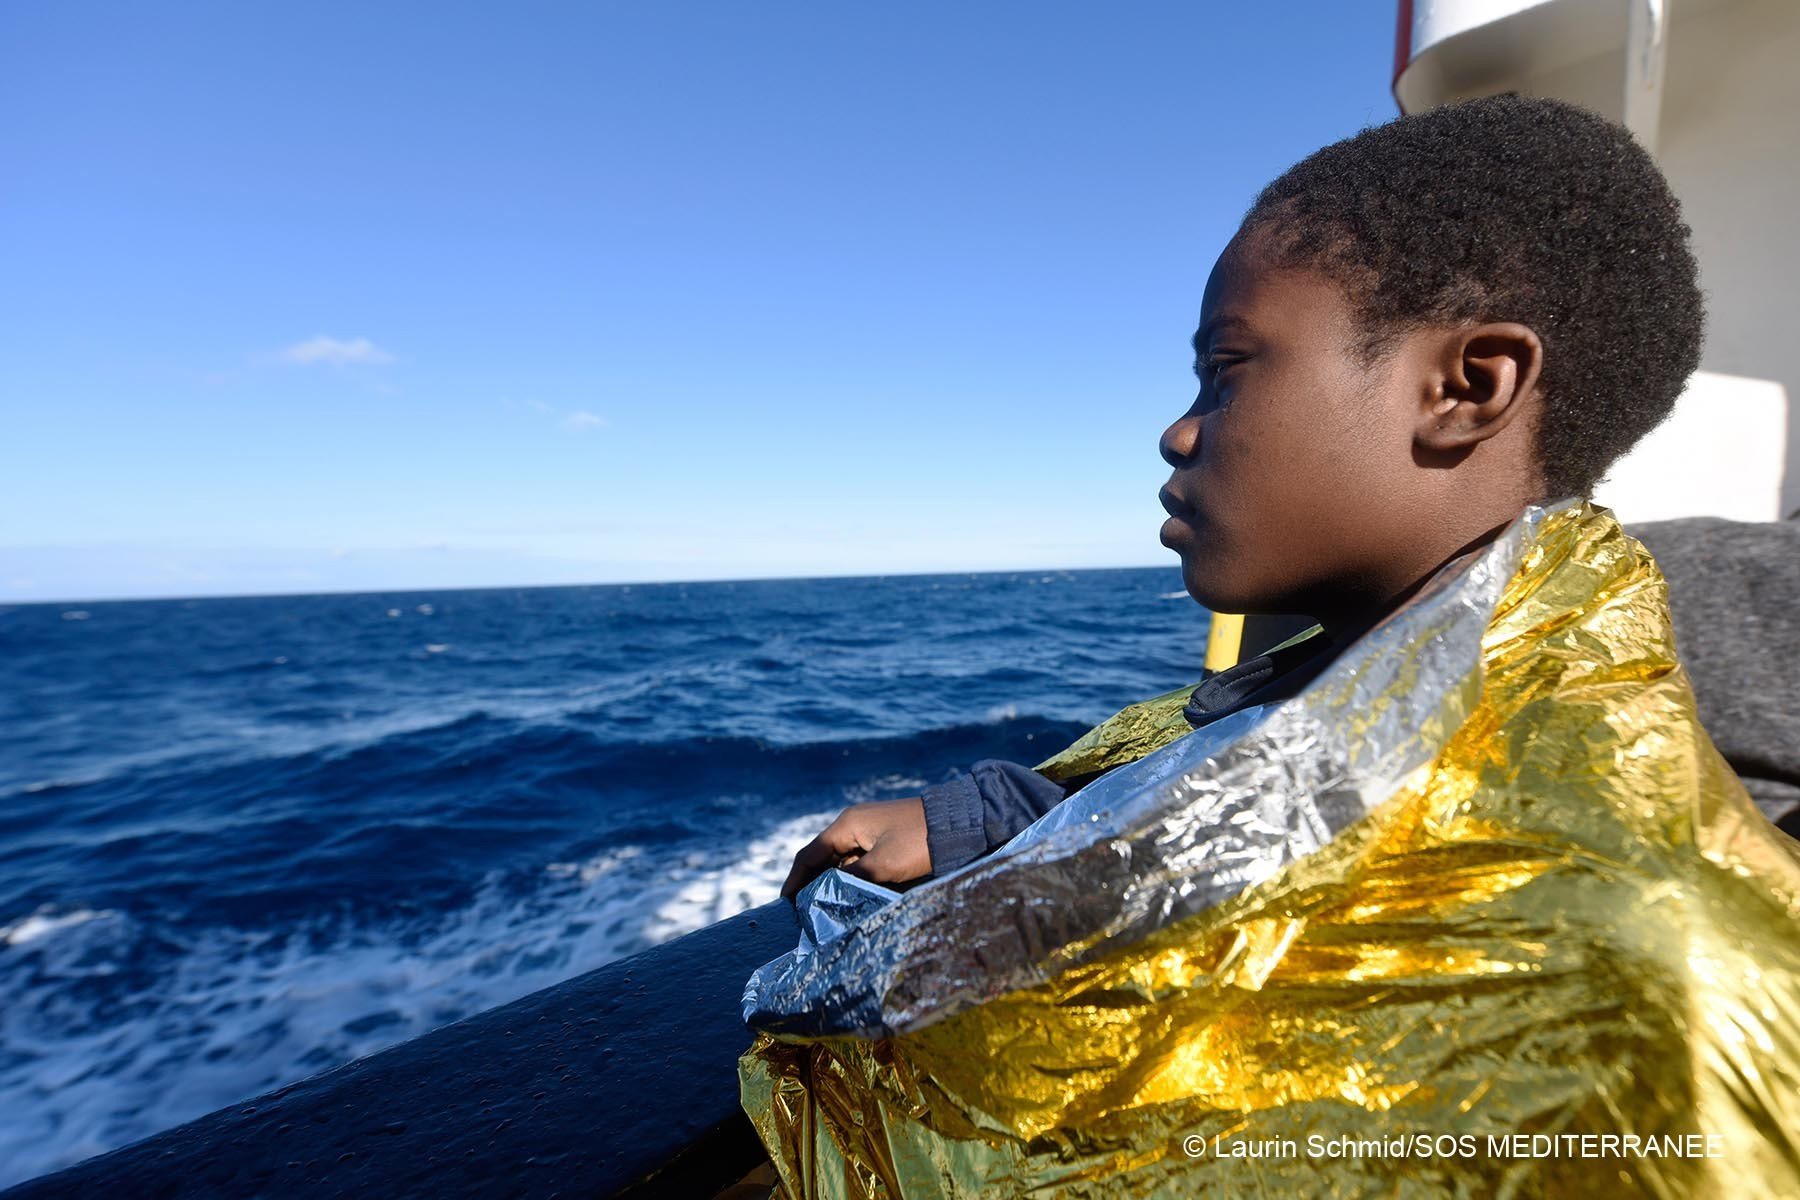 Οι ΜΚΟ διακόπτουν η μία μετά την άλλη τις επιχειρήσεις διάσωσης στη Μεσόγειο